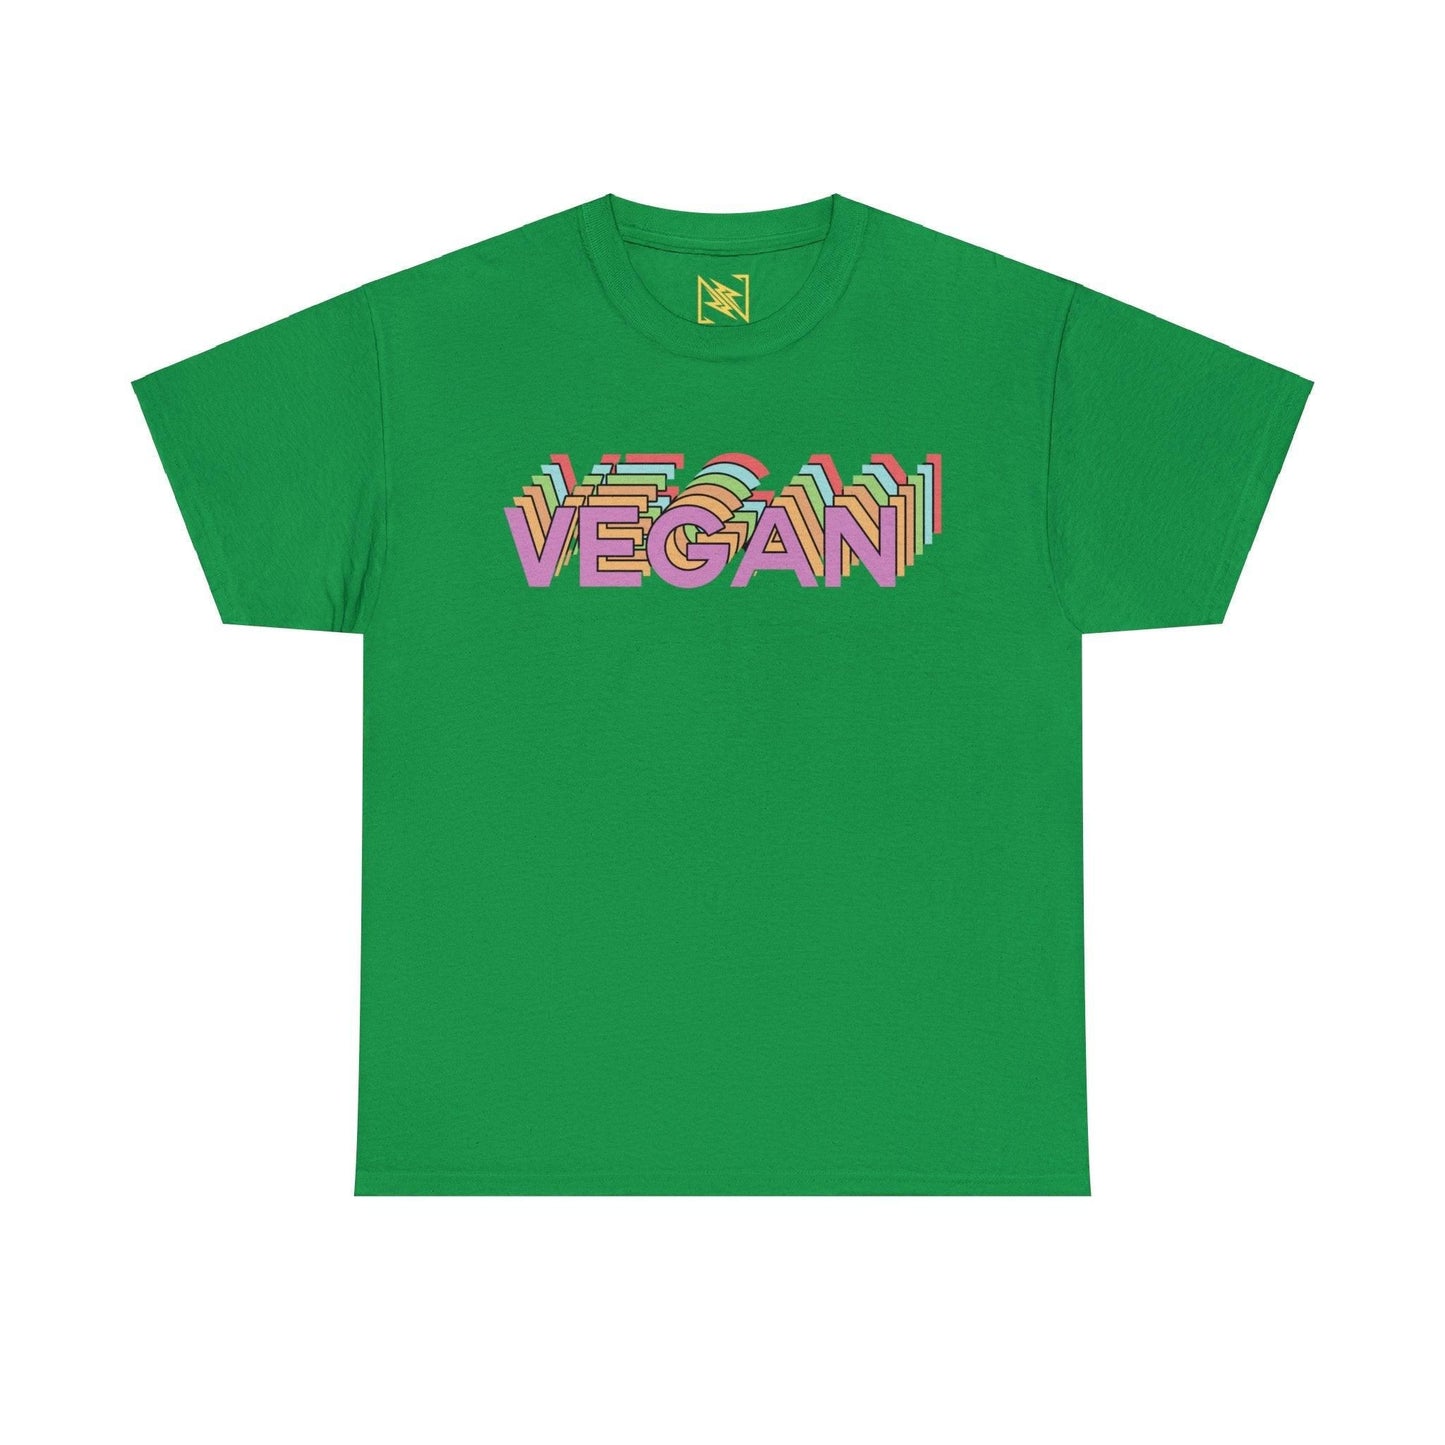 Vegan Logo Unisex Tee T-Shirt Irish Green S 